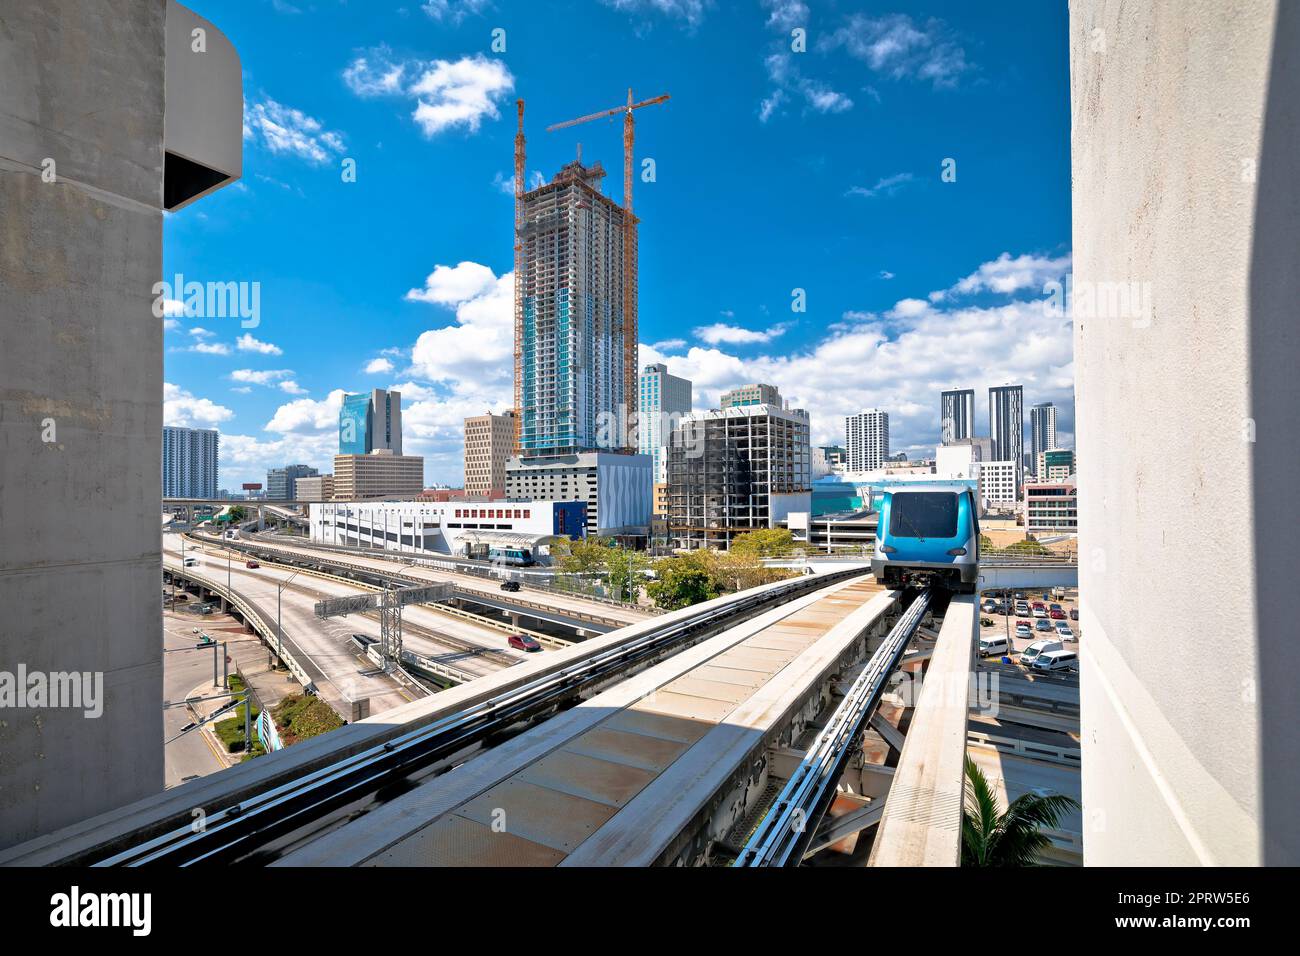 Vue sur le centre-ville de Miami et le train futuriste, État de Floride Banque D'Images